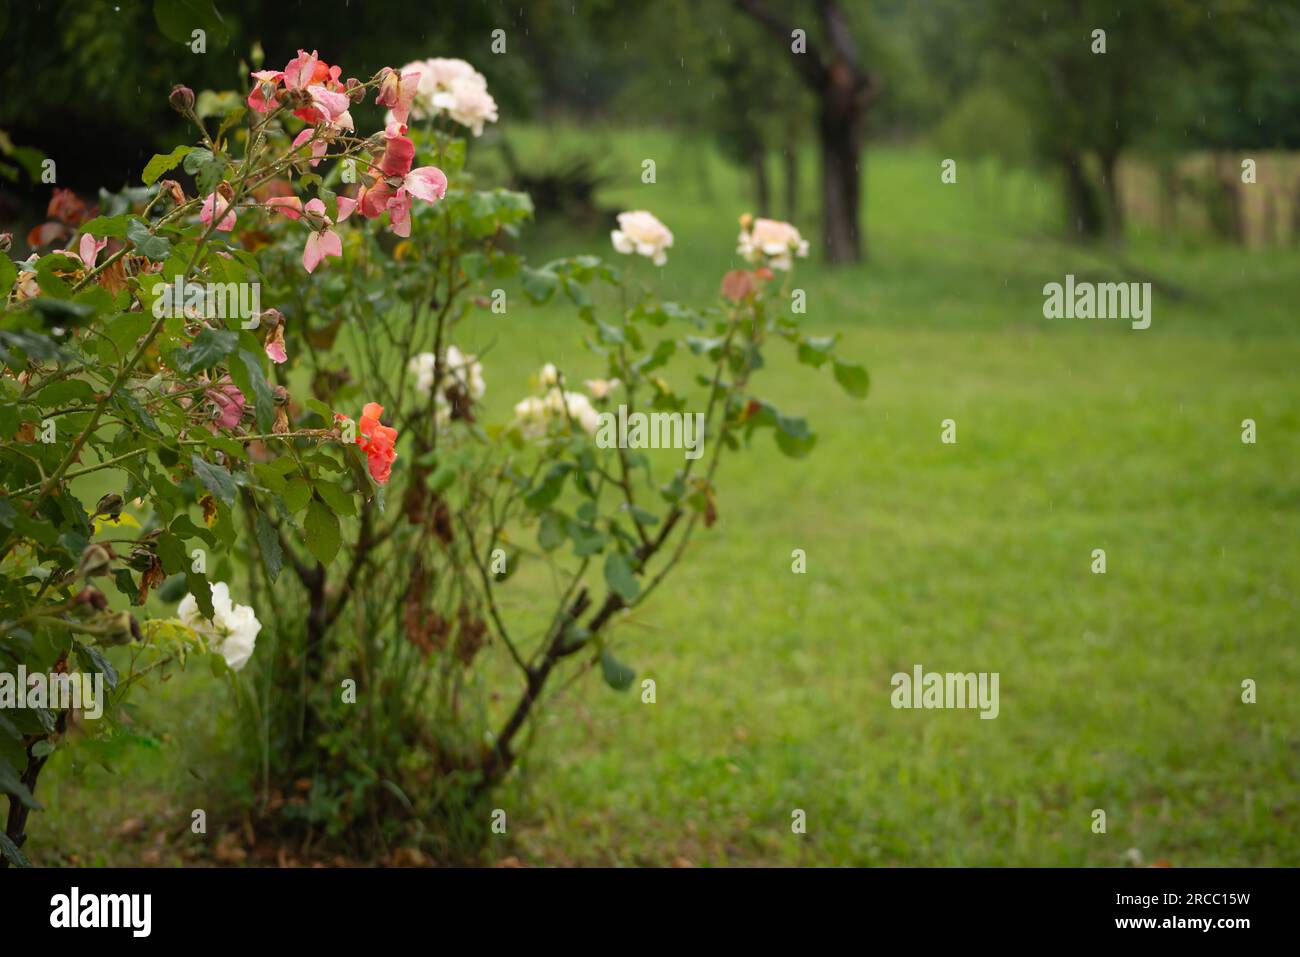 Belle fleur de rose avec gouttes de pluie, pétales de fleur de rose avec des gouttelettes d'eau dans le jardin humide, fond naturel en saison des pluies, fraîcheur, relaxati Banque D'Images